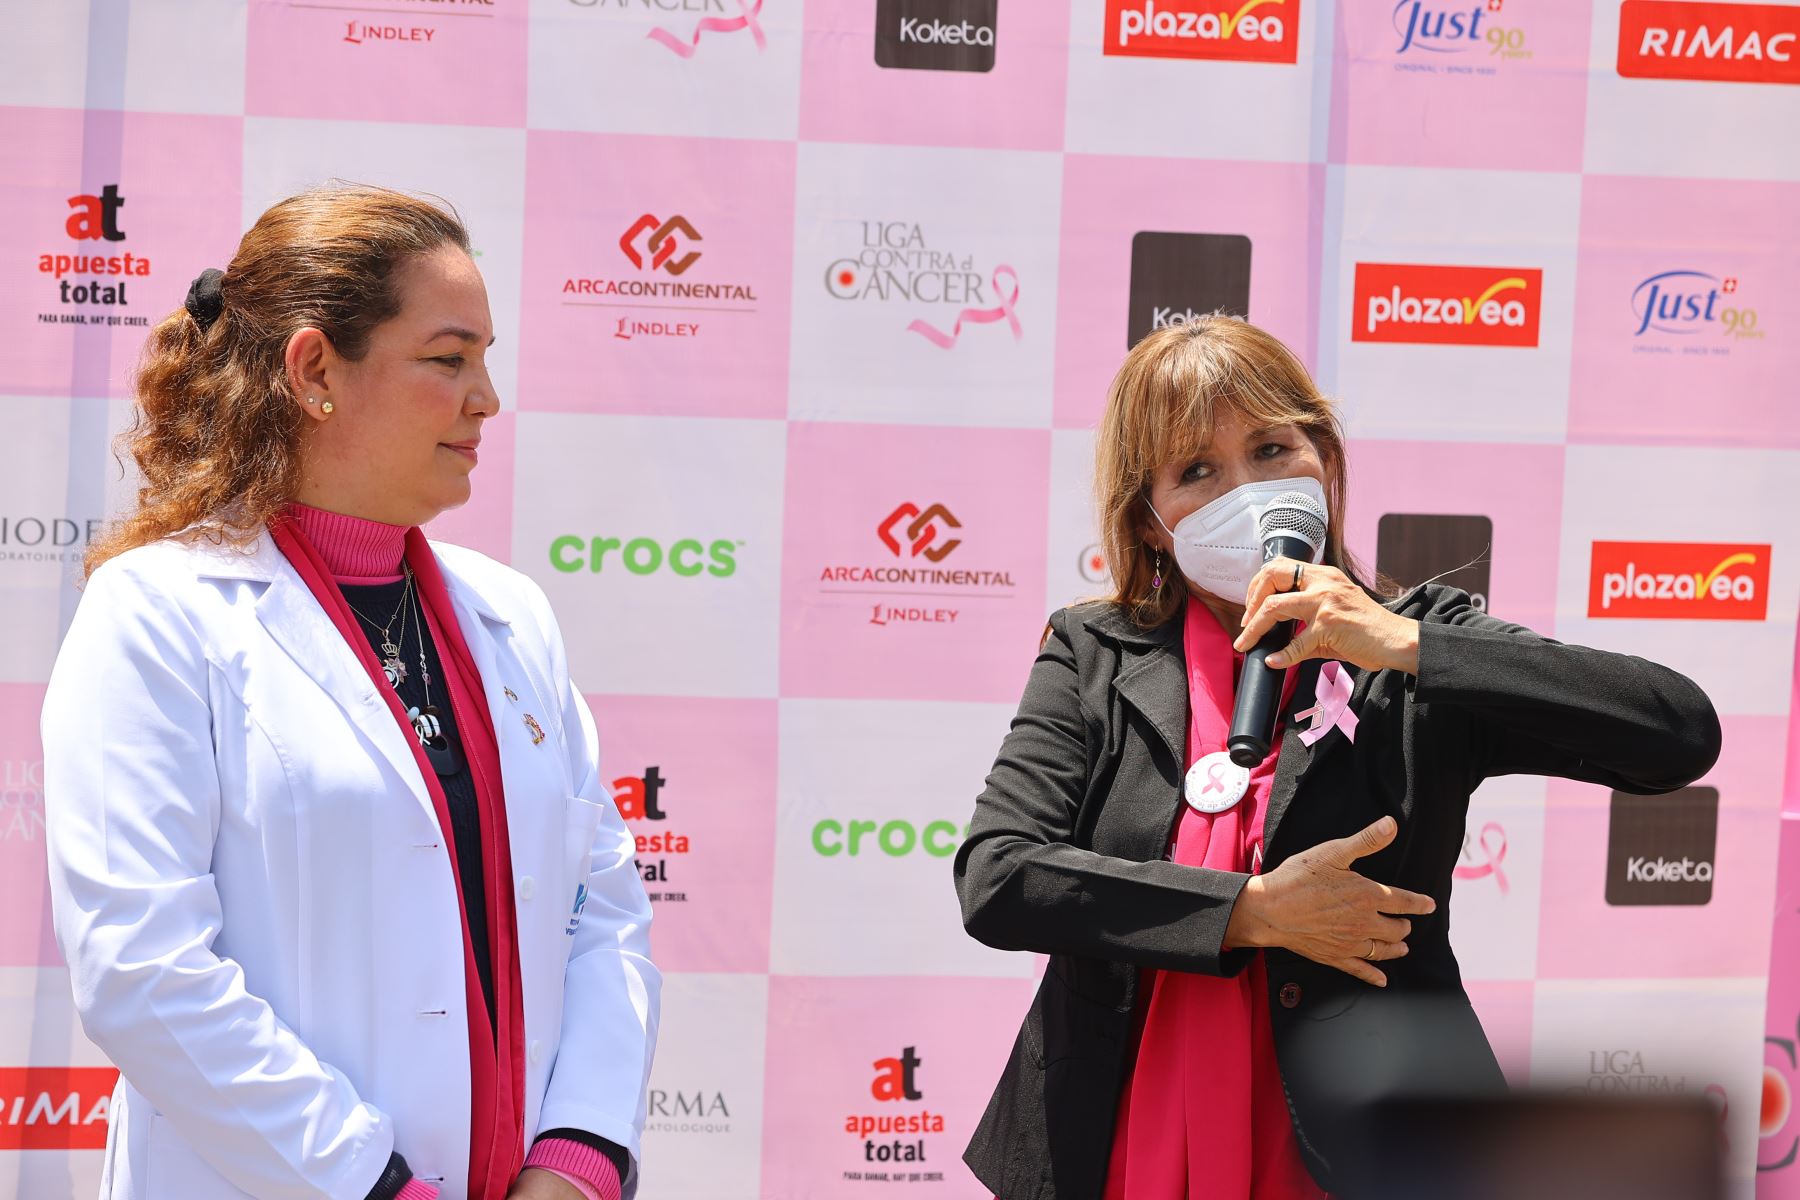 Al año se registran cerca de 7 mil nuevos casos y 2 mil muertes por cáncer de mama en el Perú. Durante todo el mes de octubre la liga realizará despistaje de cáncer de mama, cuello uterino, piel, ganglios y tiroides por una donación de 35 soles en sus centros detectores, así como despistaje gratuitos en sus unidades móviles, entre otras actividades. 
Foto: ANDINA/Andrés Valle